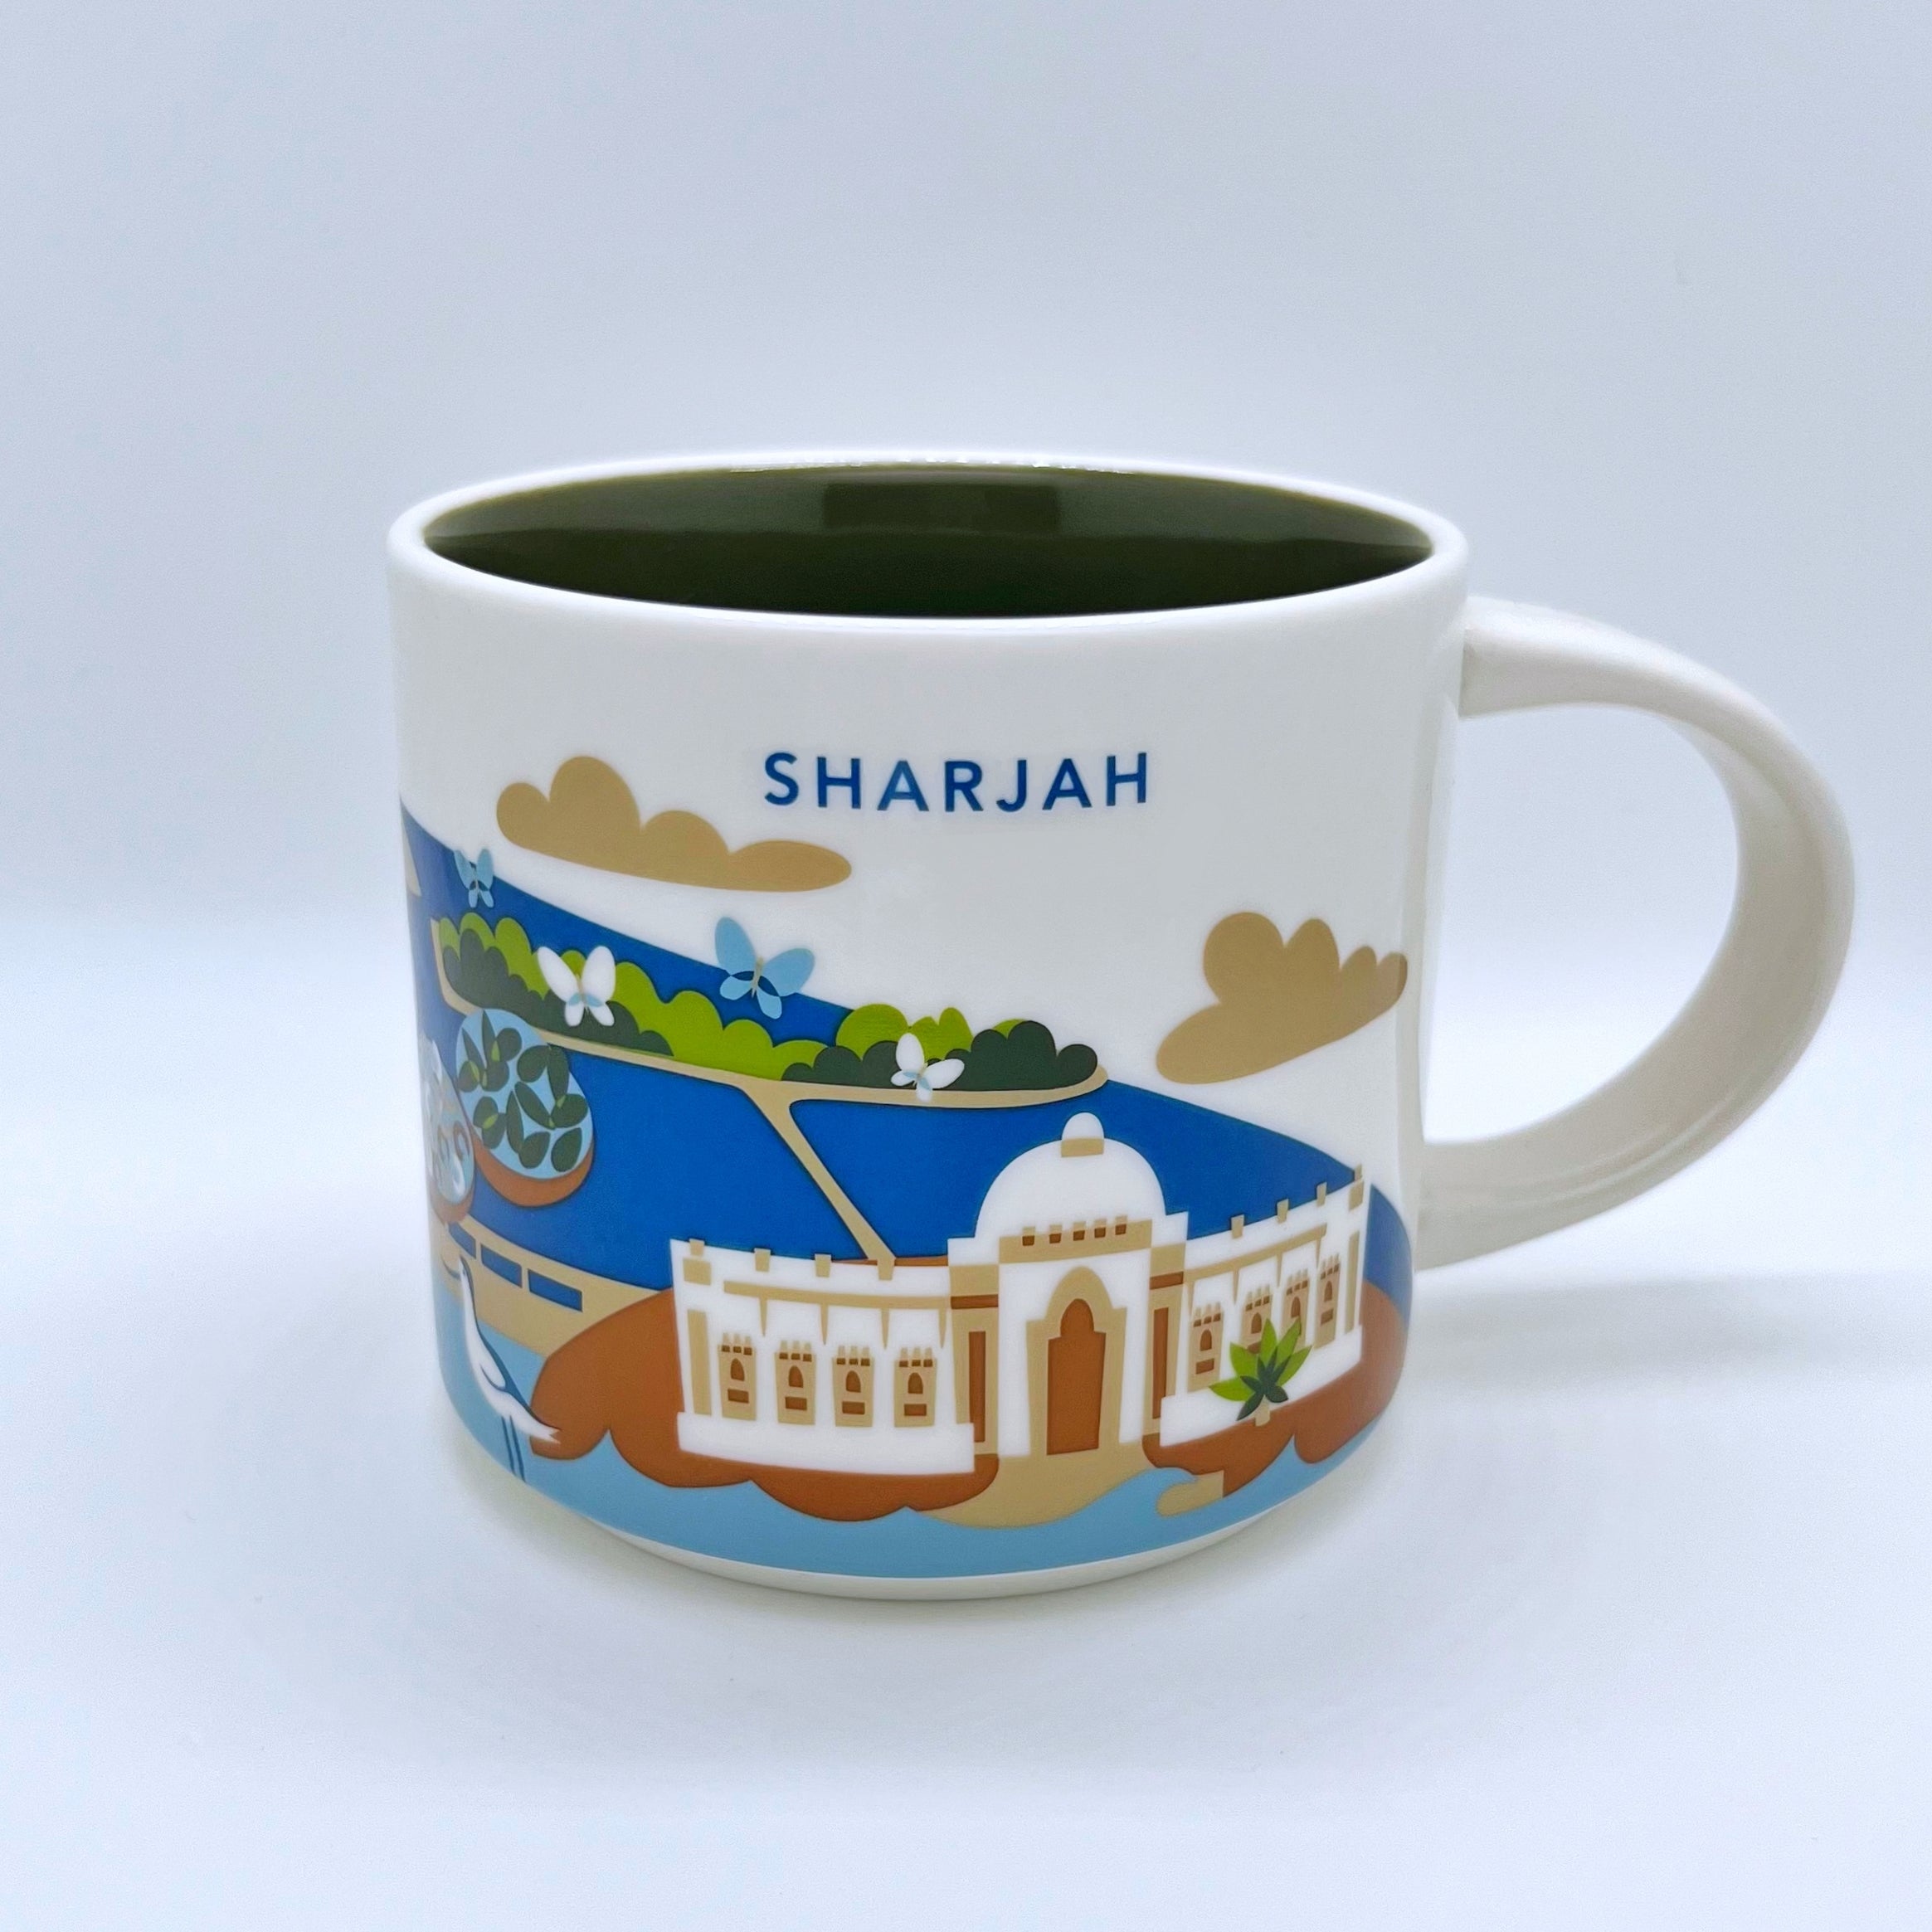 Kaffee Cappuccino oder Tee Tasse von Starbucks mit gemalten Bildern aus der Stadt Sharjah